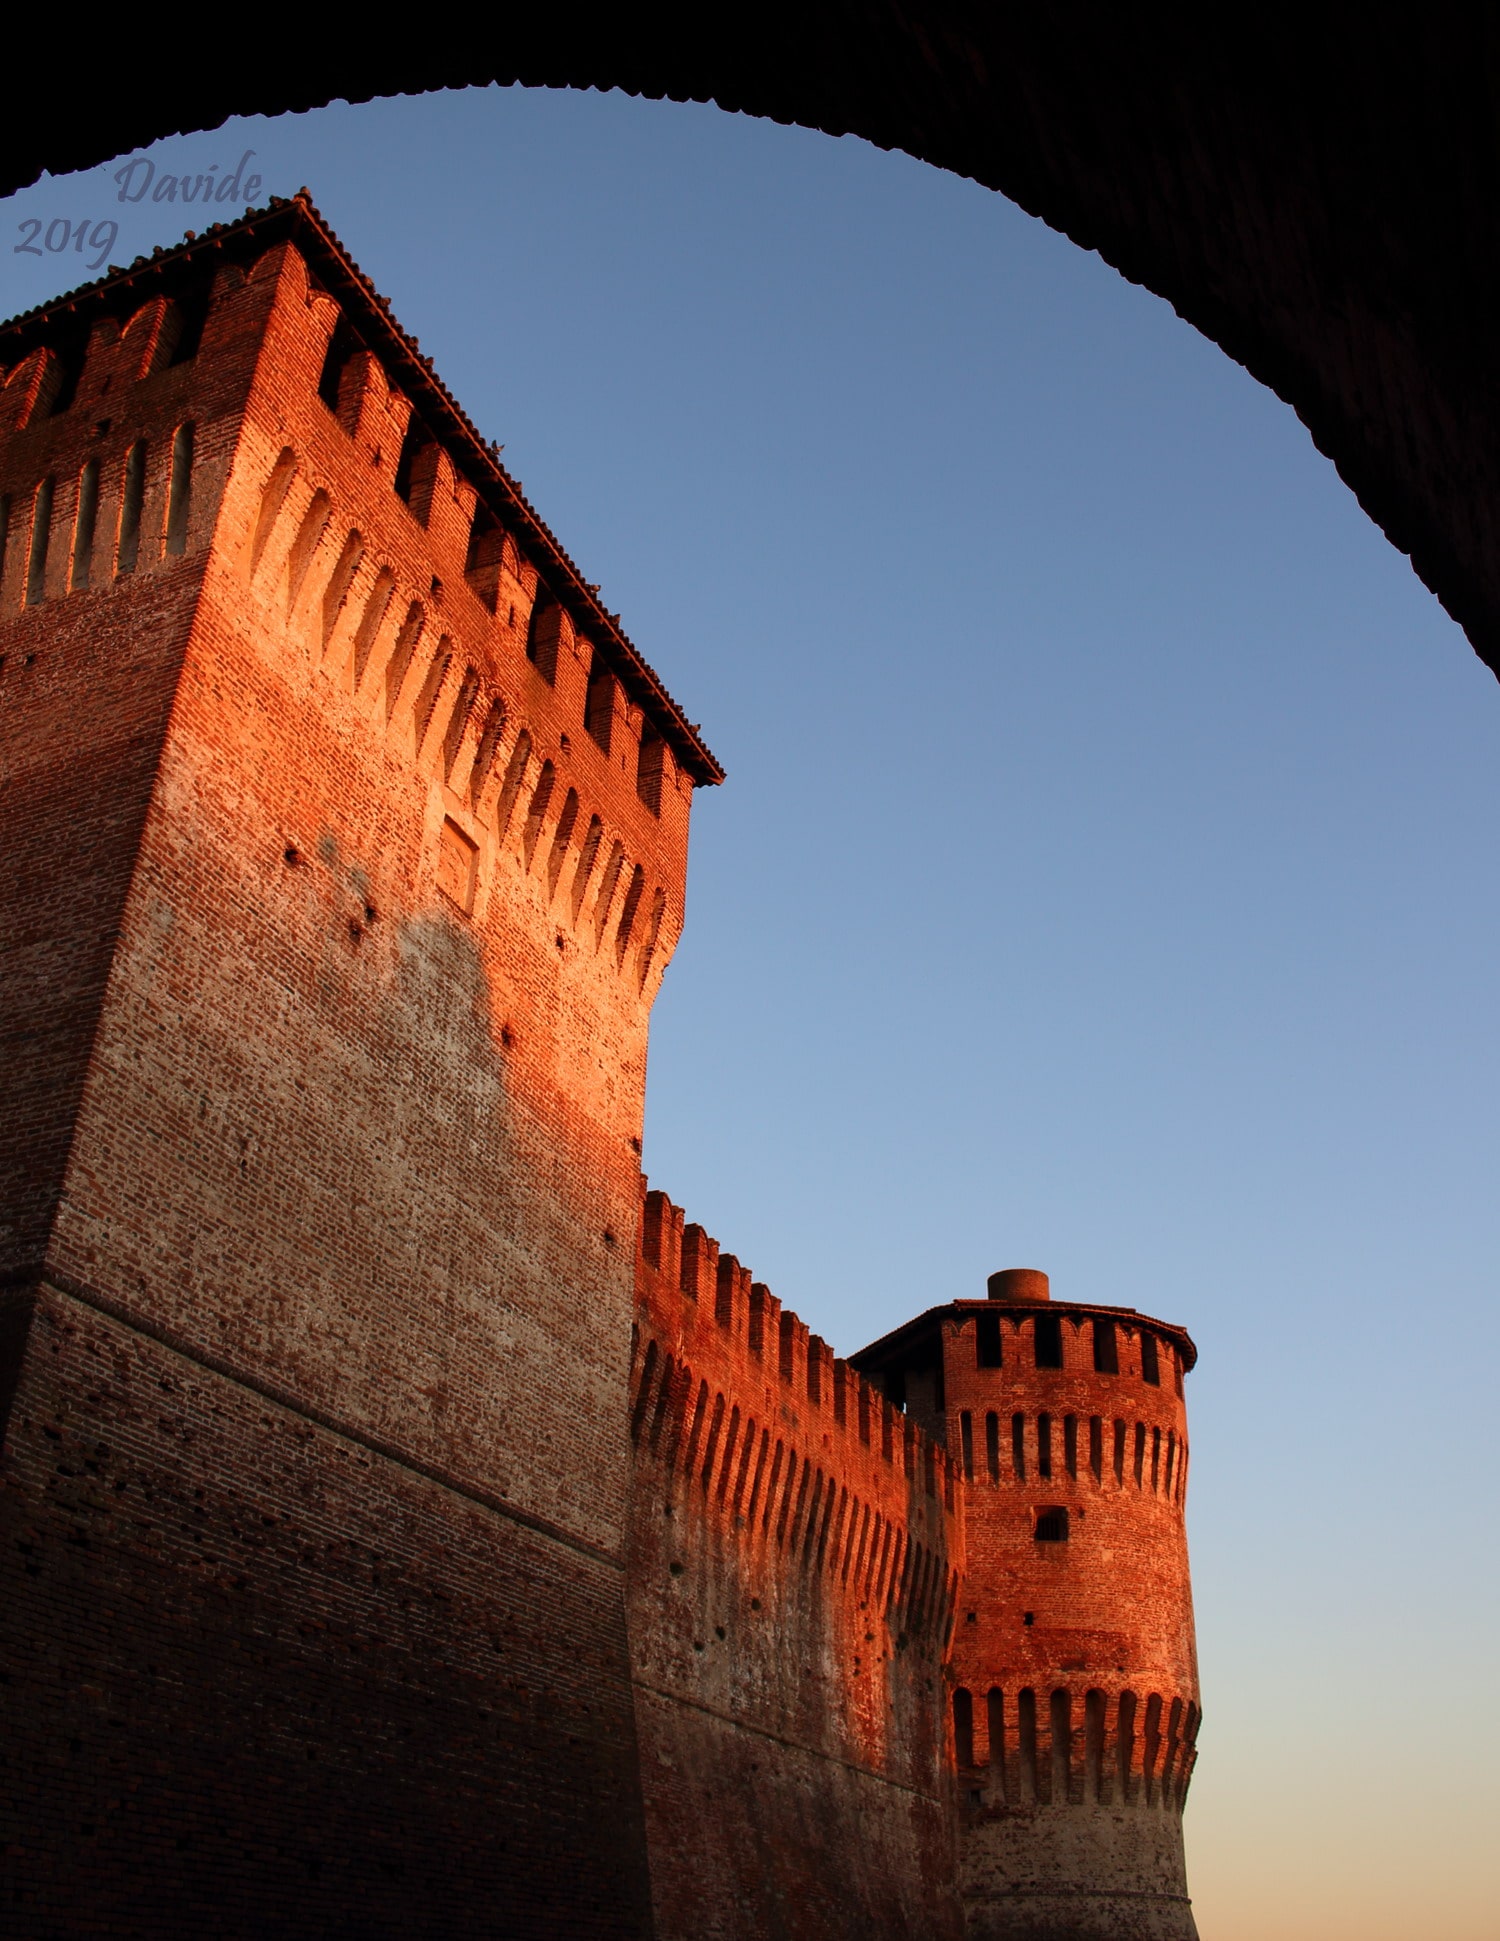 Soncino (Cremona, Lombardia – Italia). Rocca Sforzesca: Torre del Capitano e torre di Sud-Ovest. Davide Tansini. 2019. Fotografia digitale